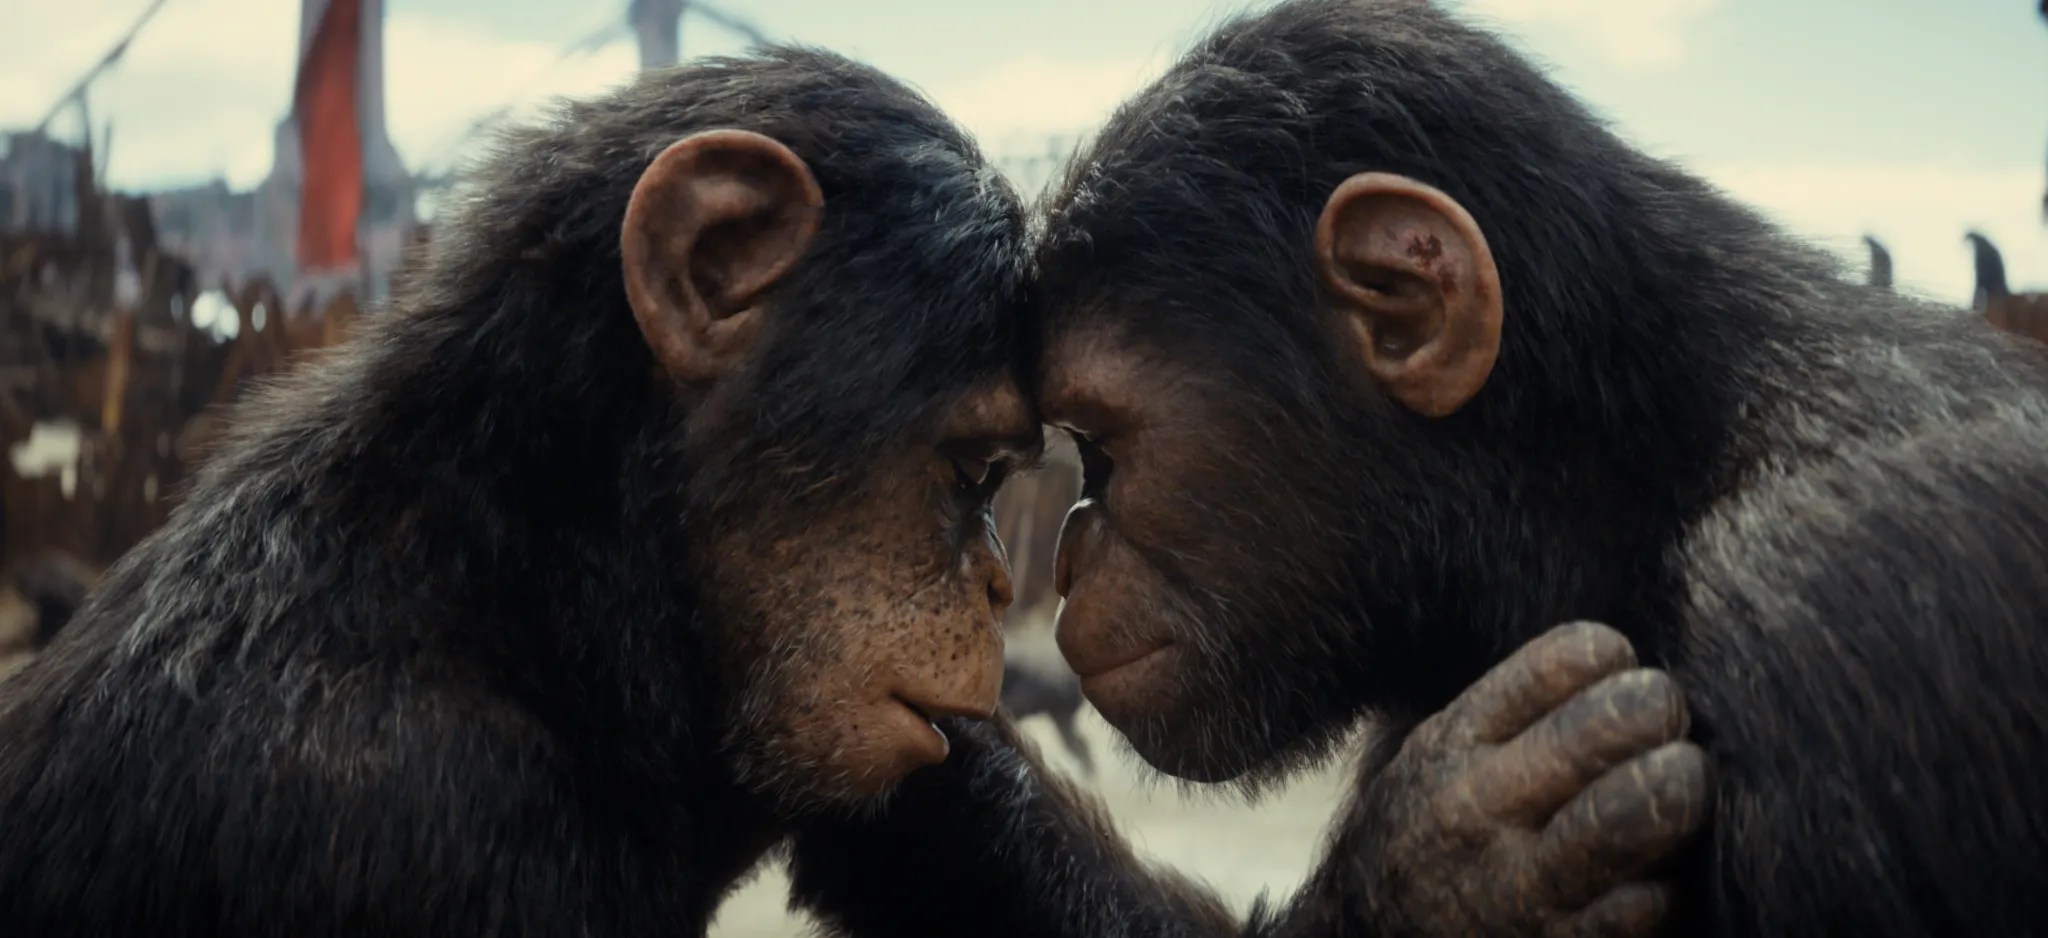 Crítica | Planeta dos Macacos: O Reinado não é um caça-níquel